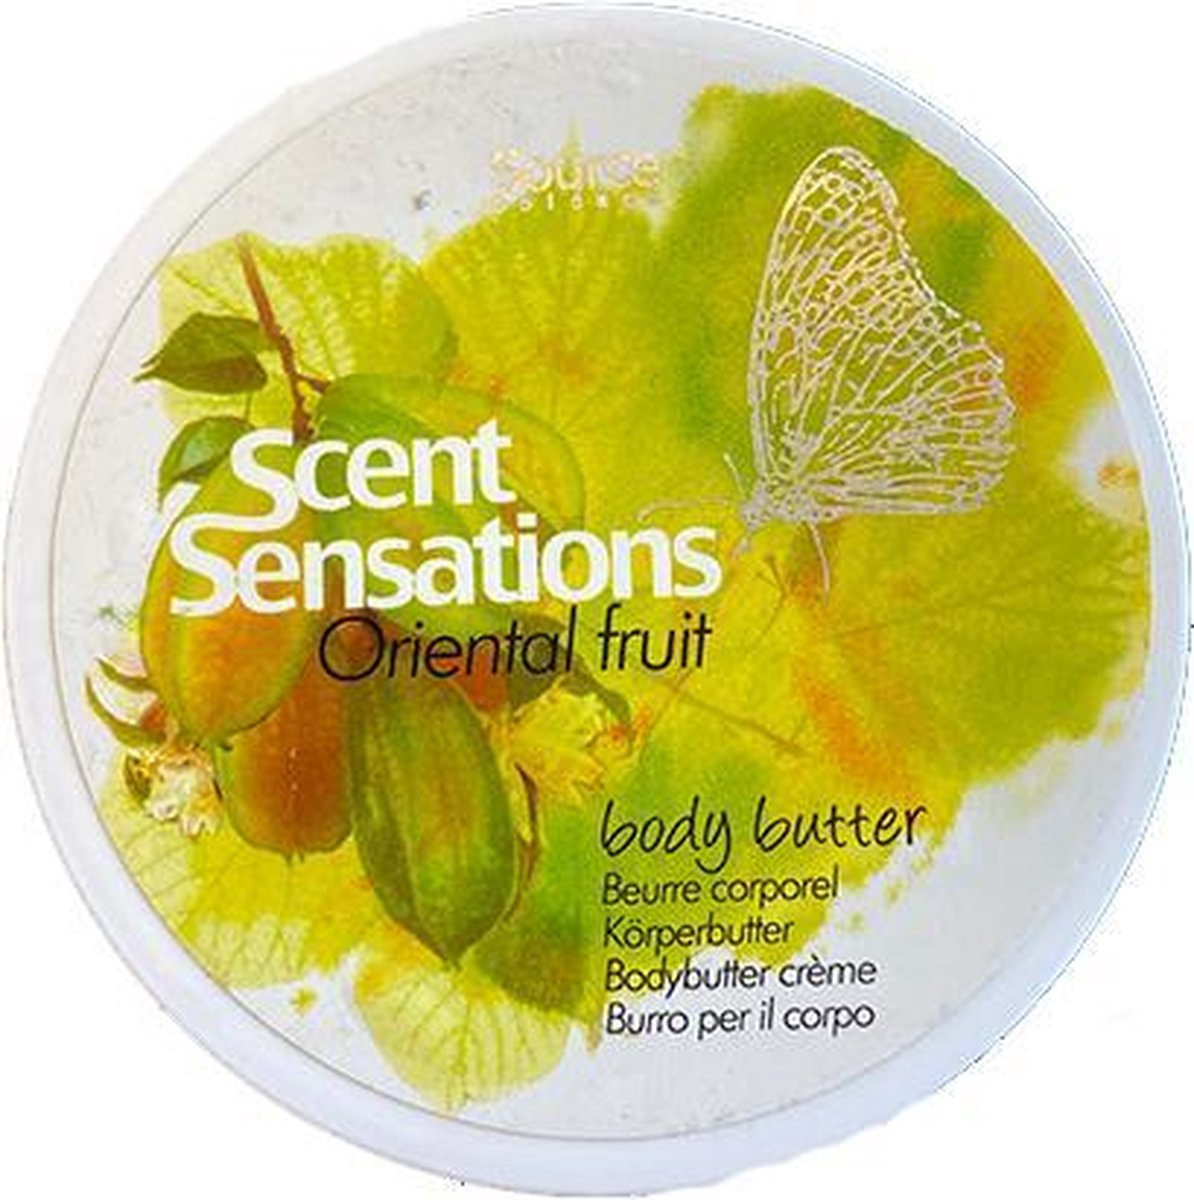 Source Balance - Scent Sensations - Body butter crème - Oriental Fruit